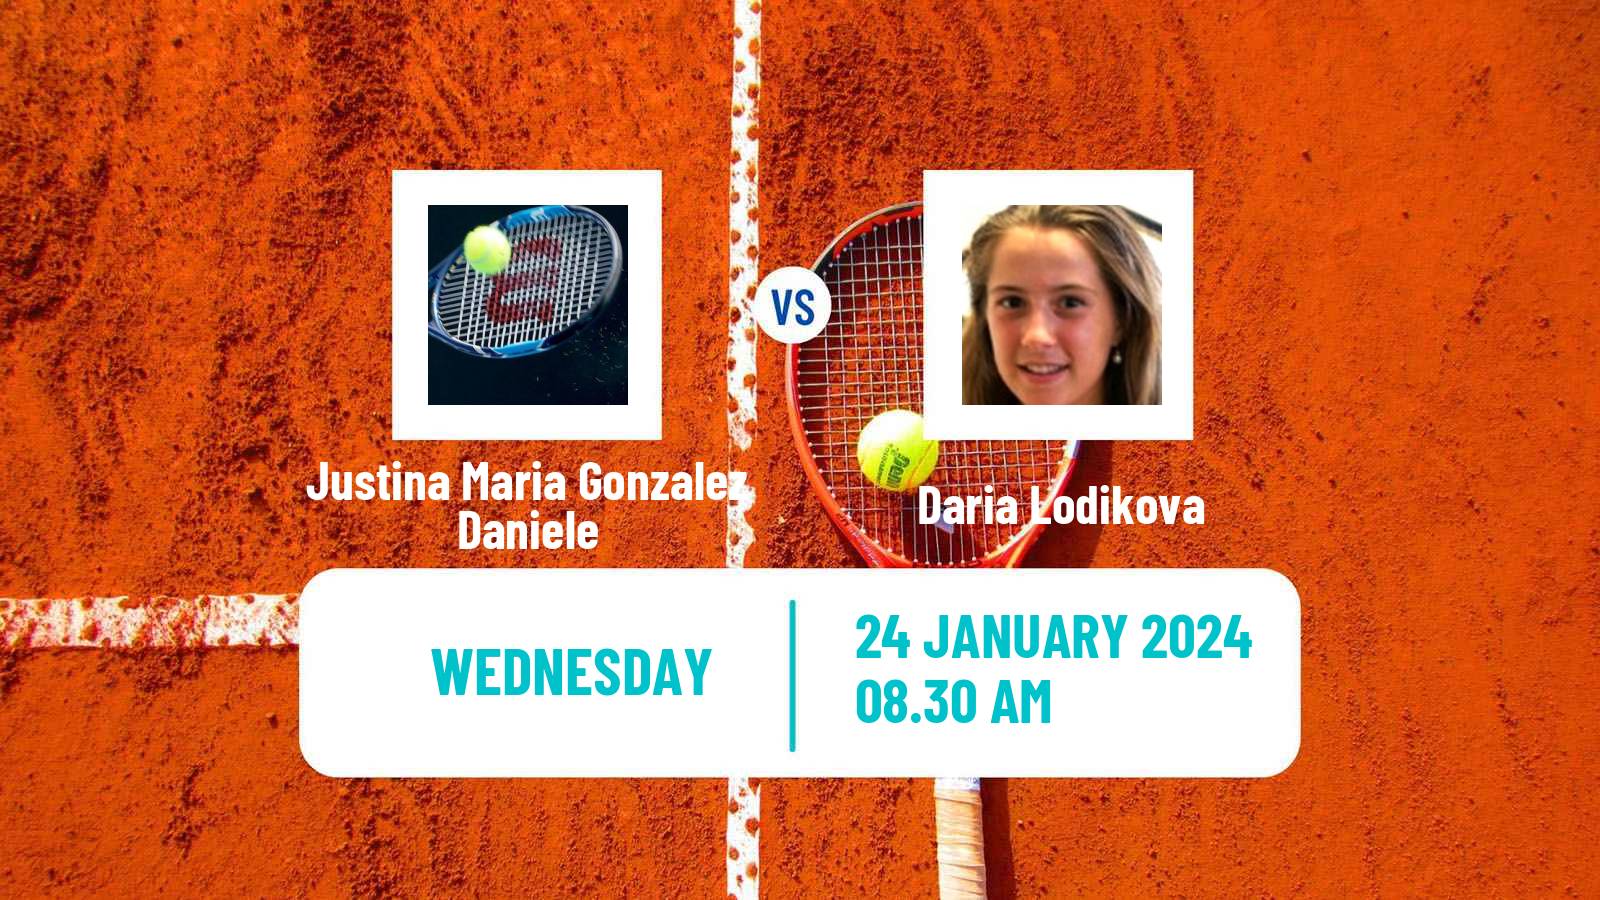 Tennis ITF W35 Buenos Aires 2 Women Justina Maria Gonzalez Daniele - Daria Lodikova